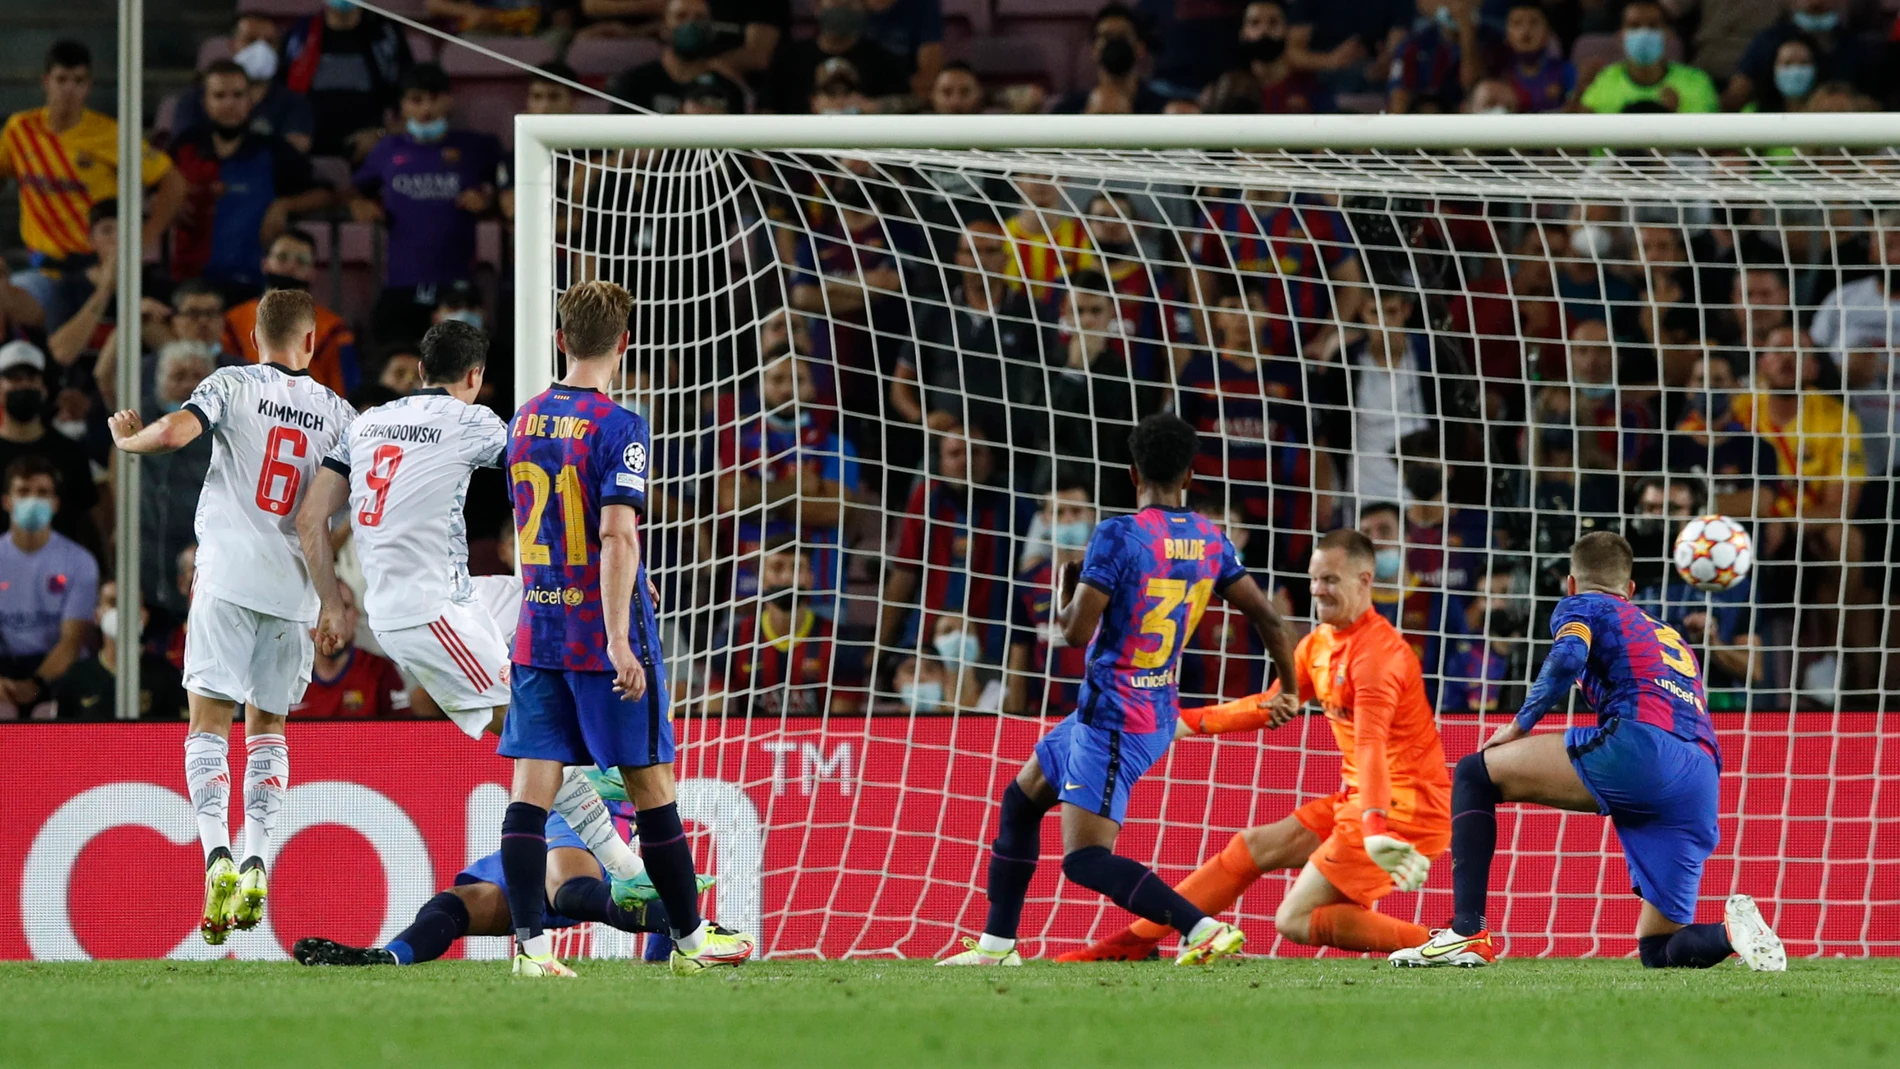 El Barça naufraga frente al Bayern de Múnich sin tirar a puerta: Koeman, gran señalado por su sistema